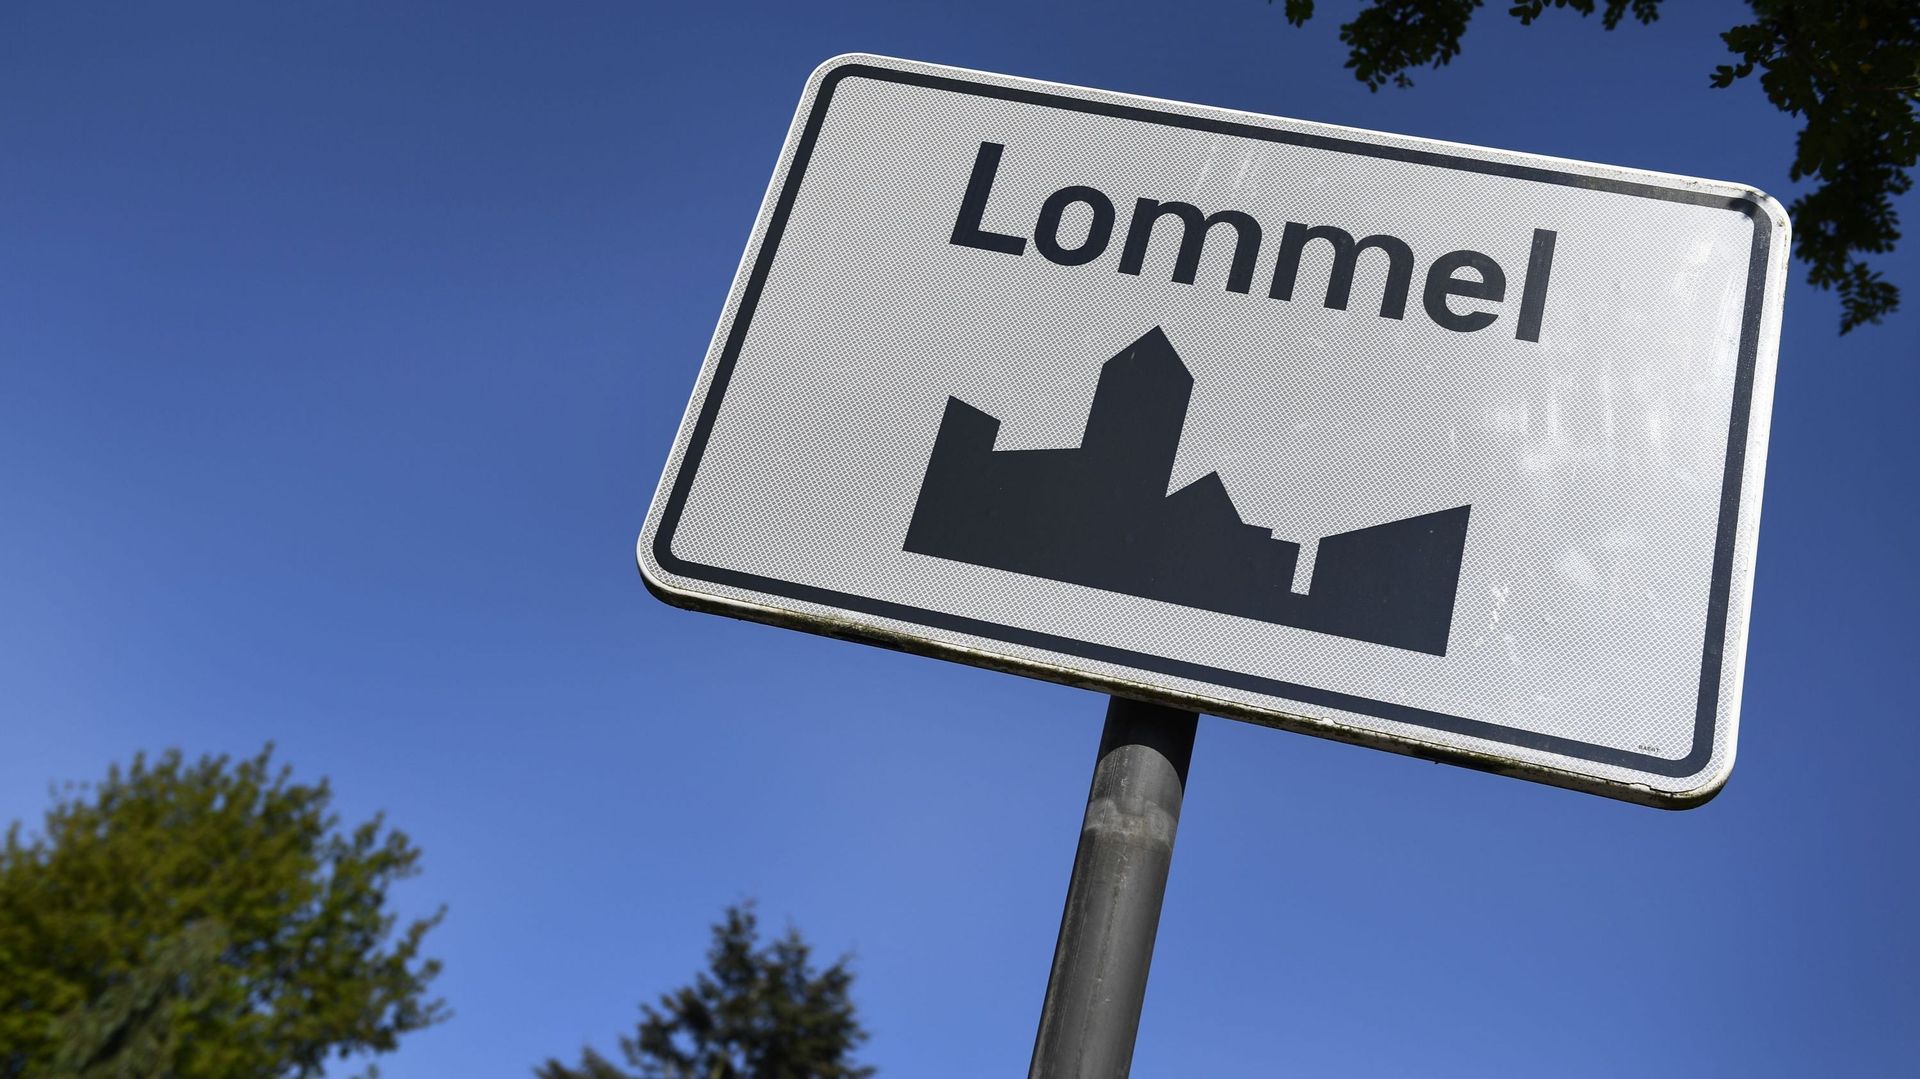 La commune de Lommel